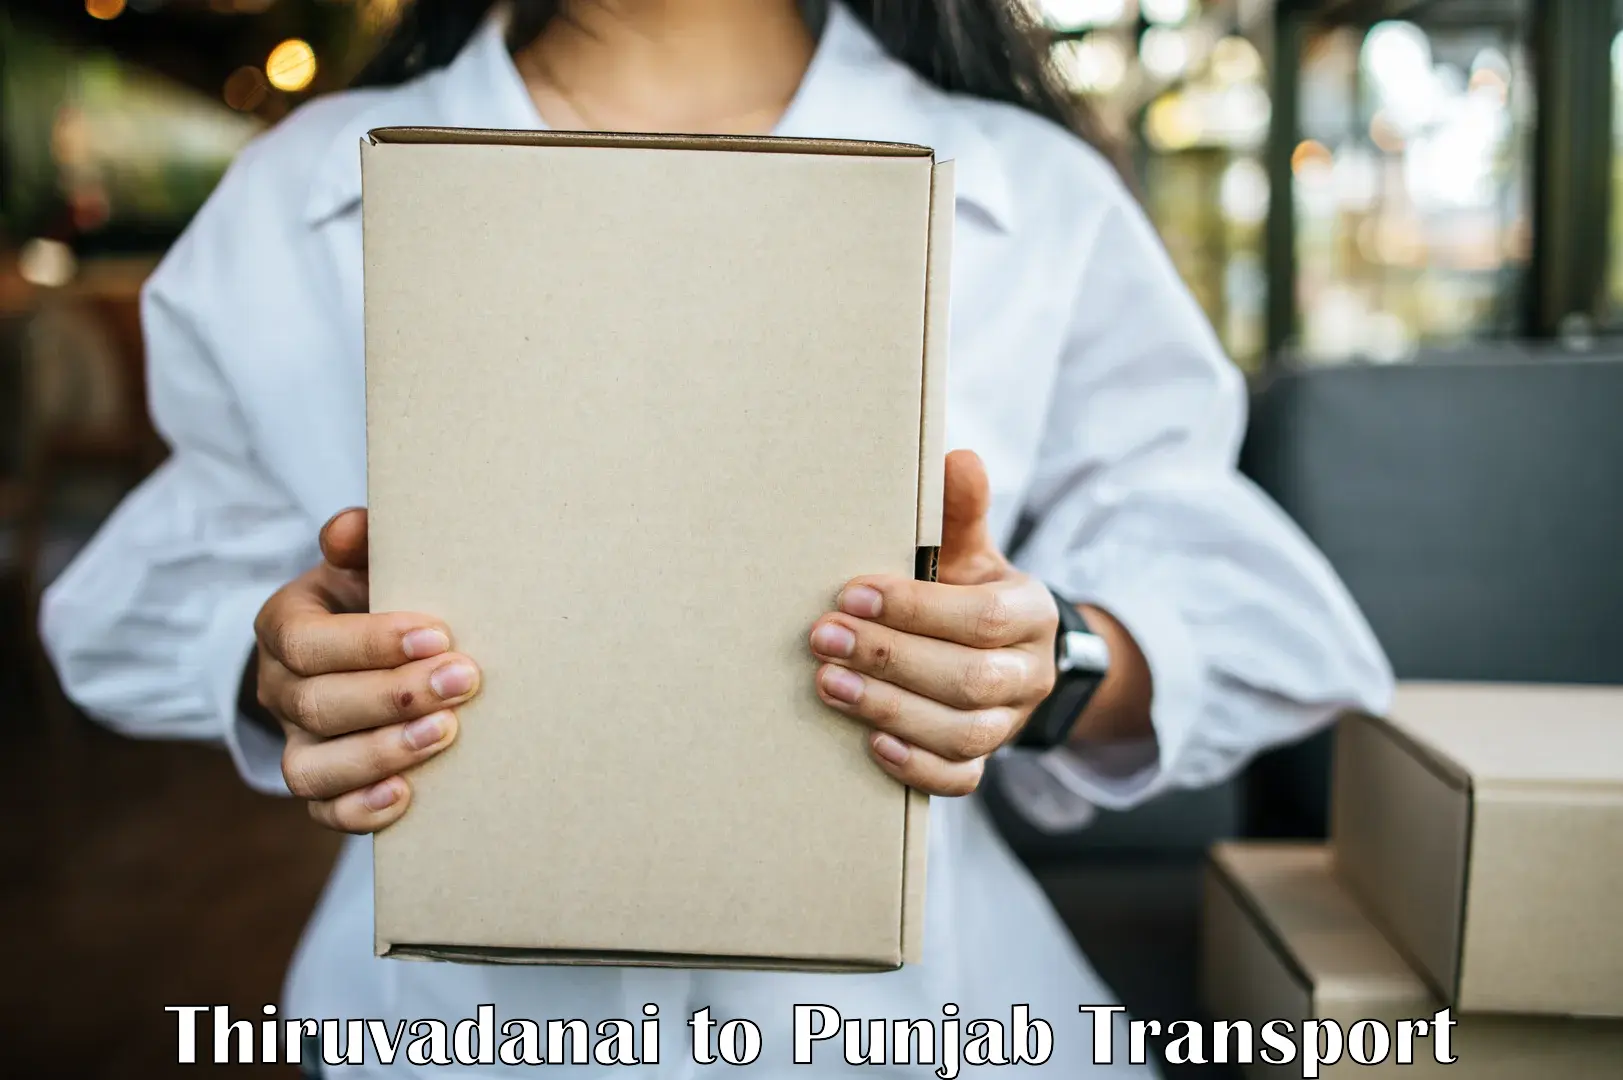 Transport shared services Thiruvadanai to Nawanshahr